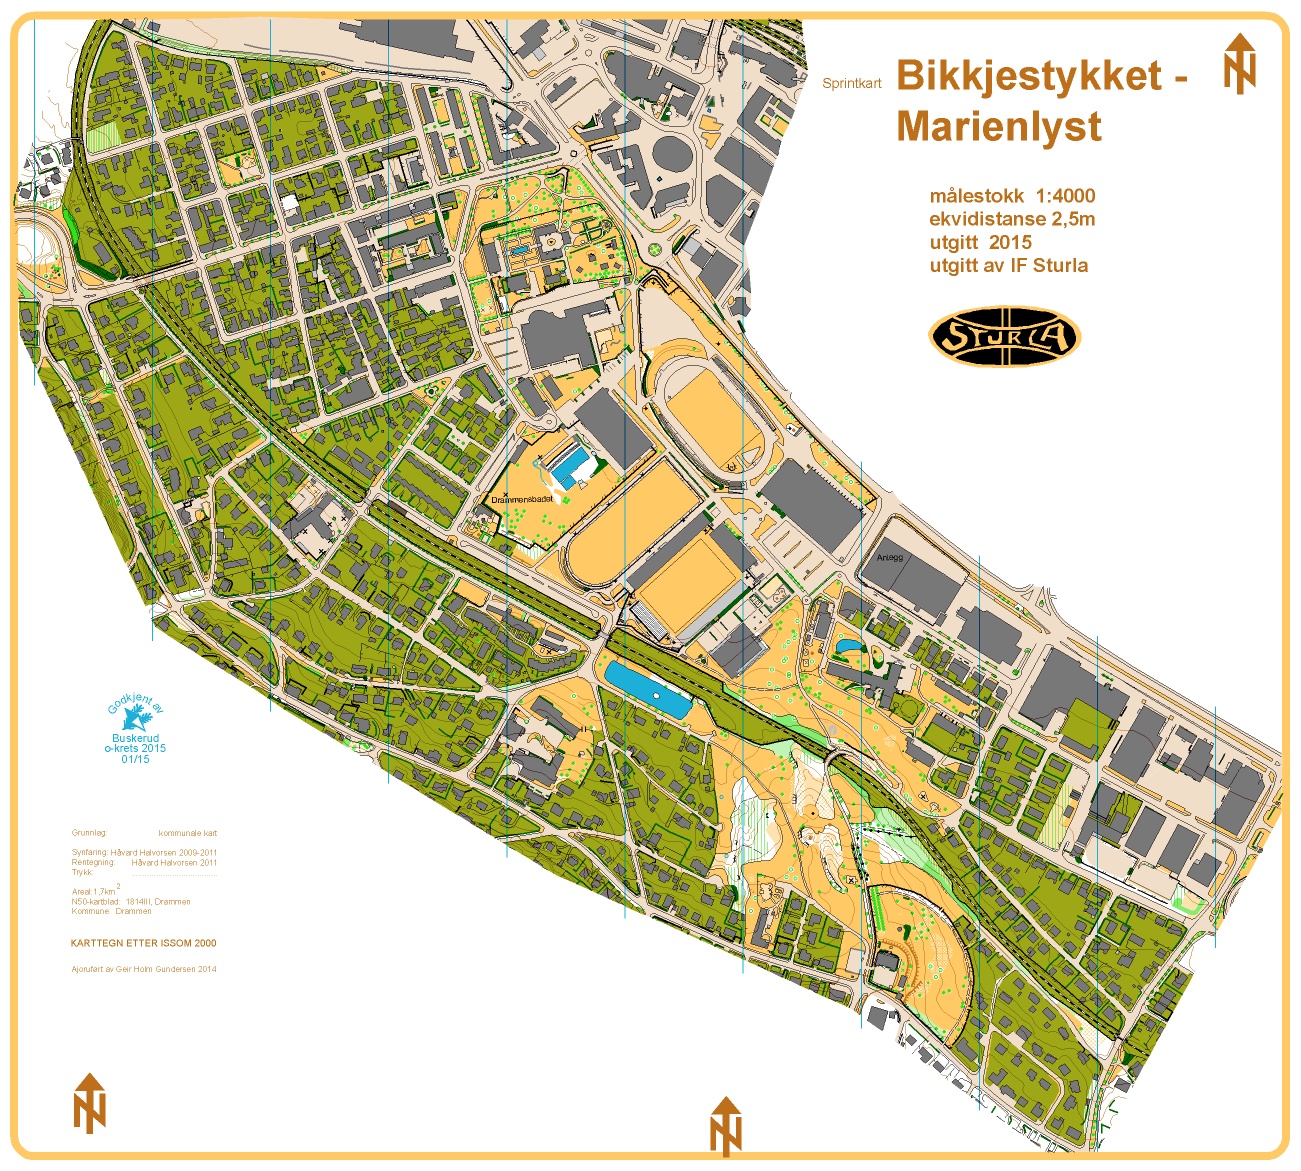 Bikkjestykket-Marienlyst (01.05.2015)